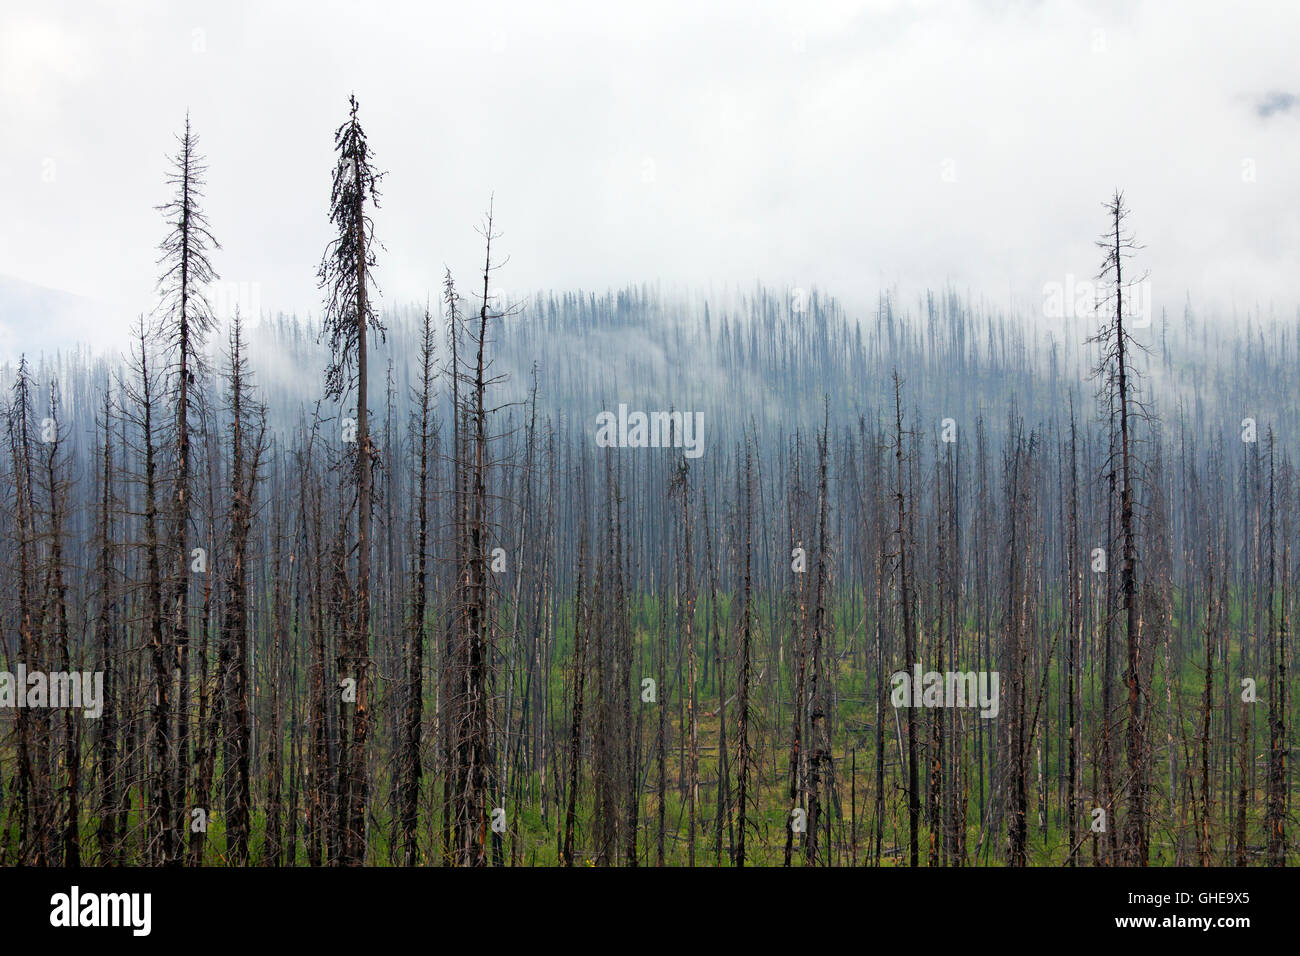 Carbonizzati Lodgepole pino bruciato dal fuoco della foresta, Kootenay National Park, British Columbia, Canadian Rockies, Canada Foto Stock